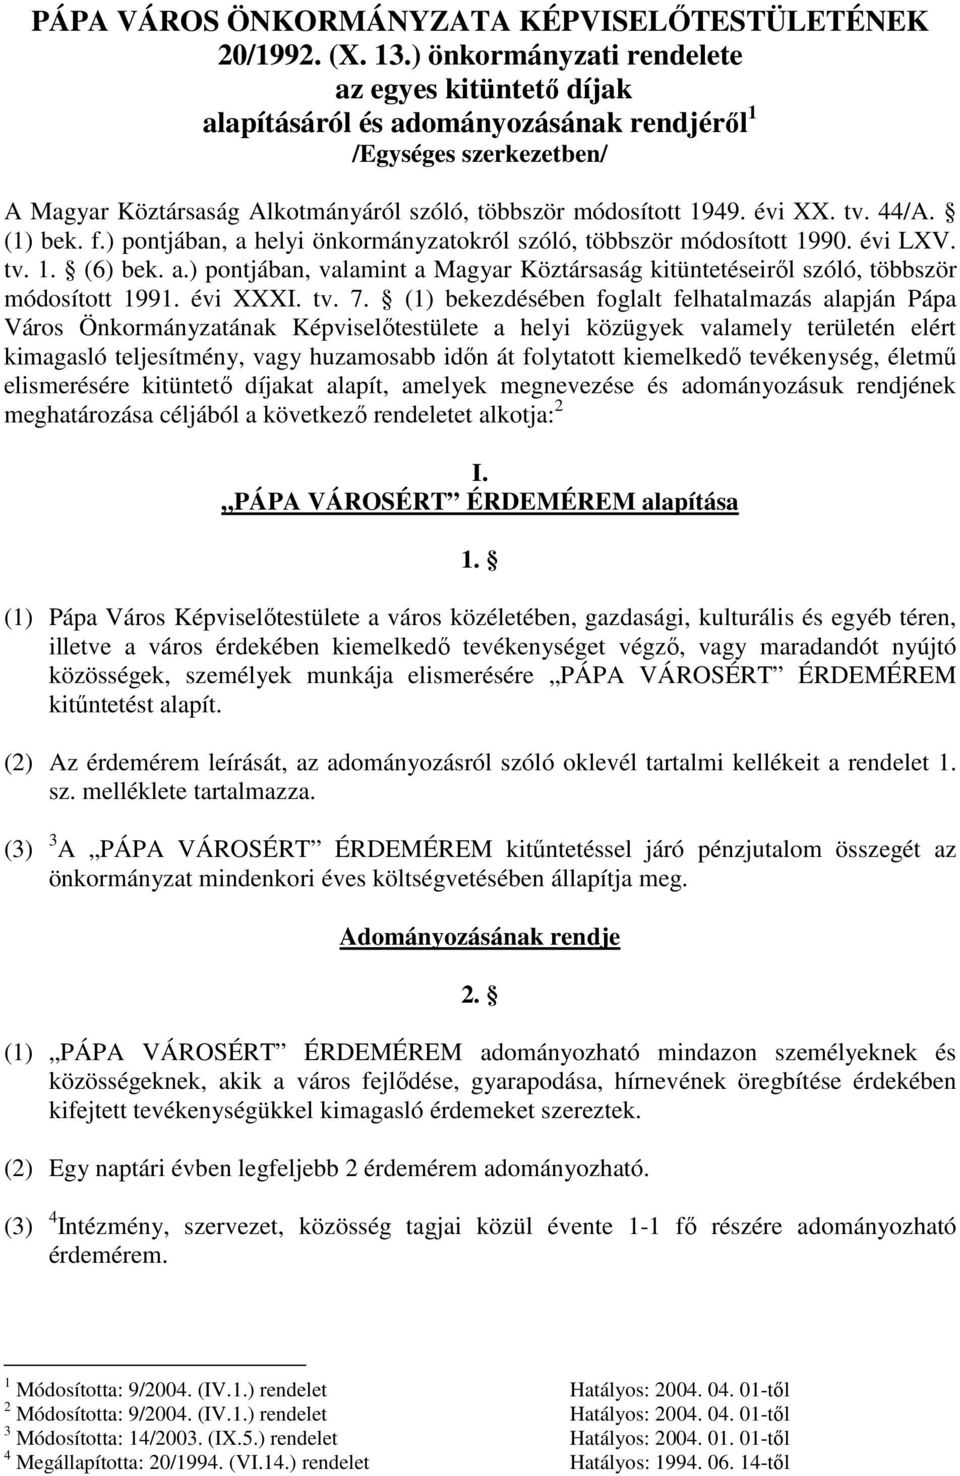 44/A. (1) bek. f.) pontjában, a helyi önkormányzatokról szóló, többször módosított 1990. évi LXV. tv. 1. (6) bek. a.) pontjában, valamint a Magyar Köztársaság kitüntetéseiről szóló, többször módosított 1991.